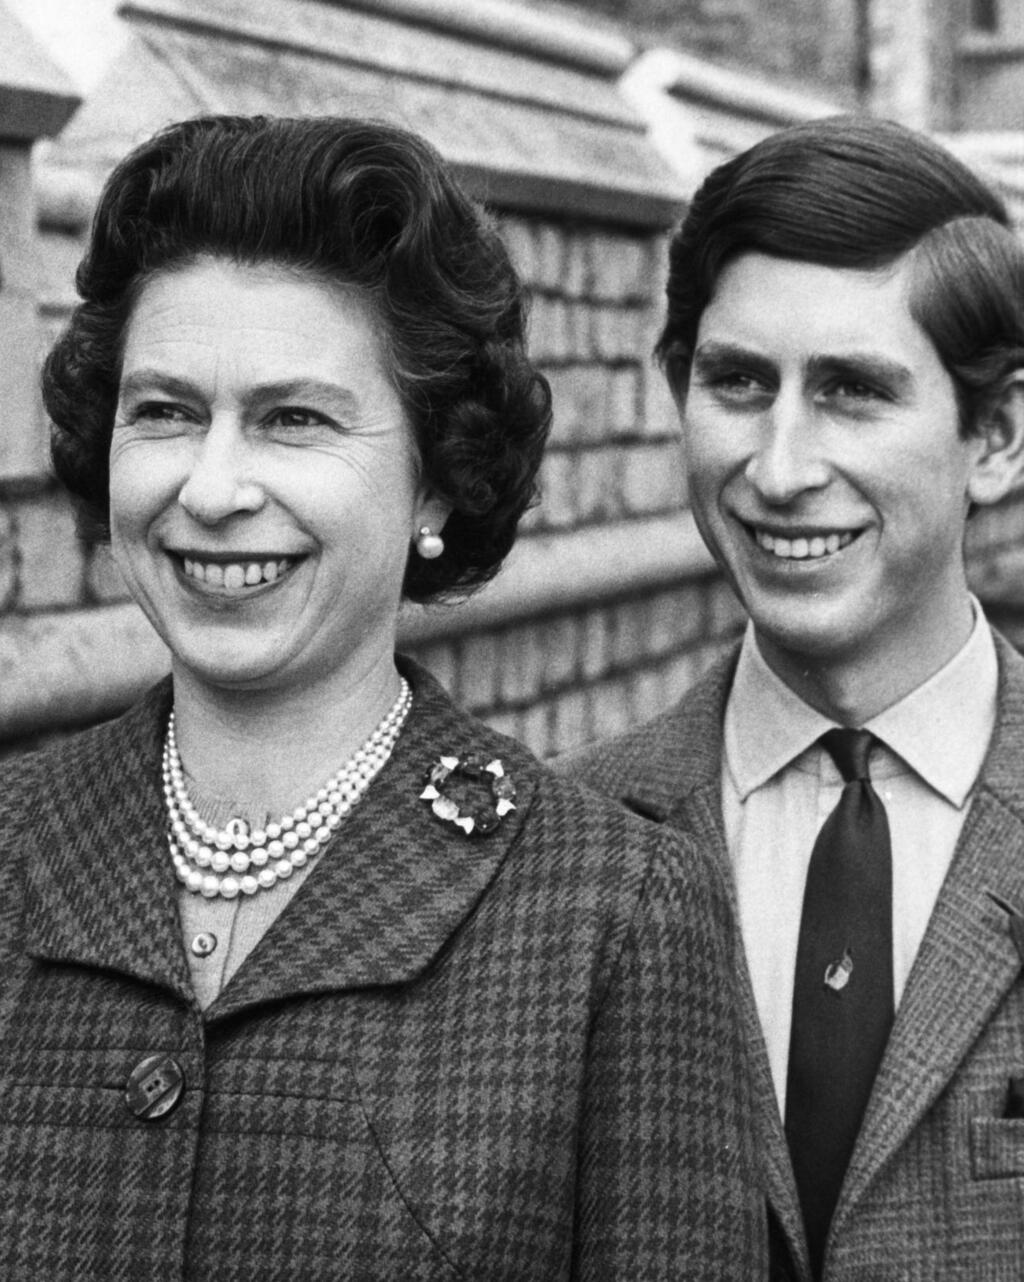 ארכיון 1969 המלך צ'רלס, אז נסיך, עם אמו המלכה אליזבת ב טירת וינזדור בריטניה